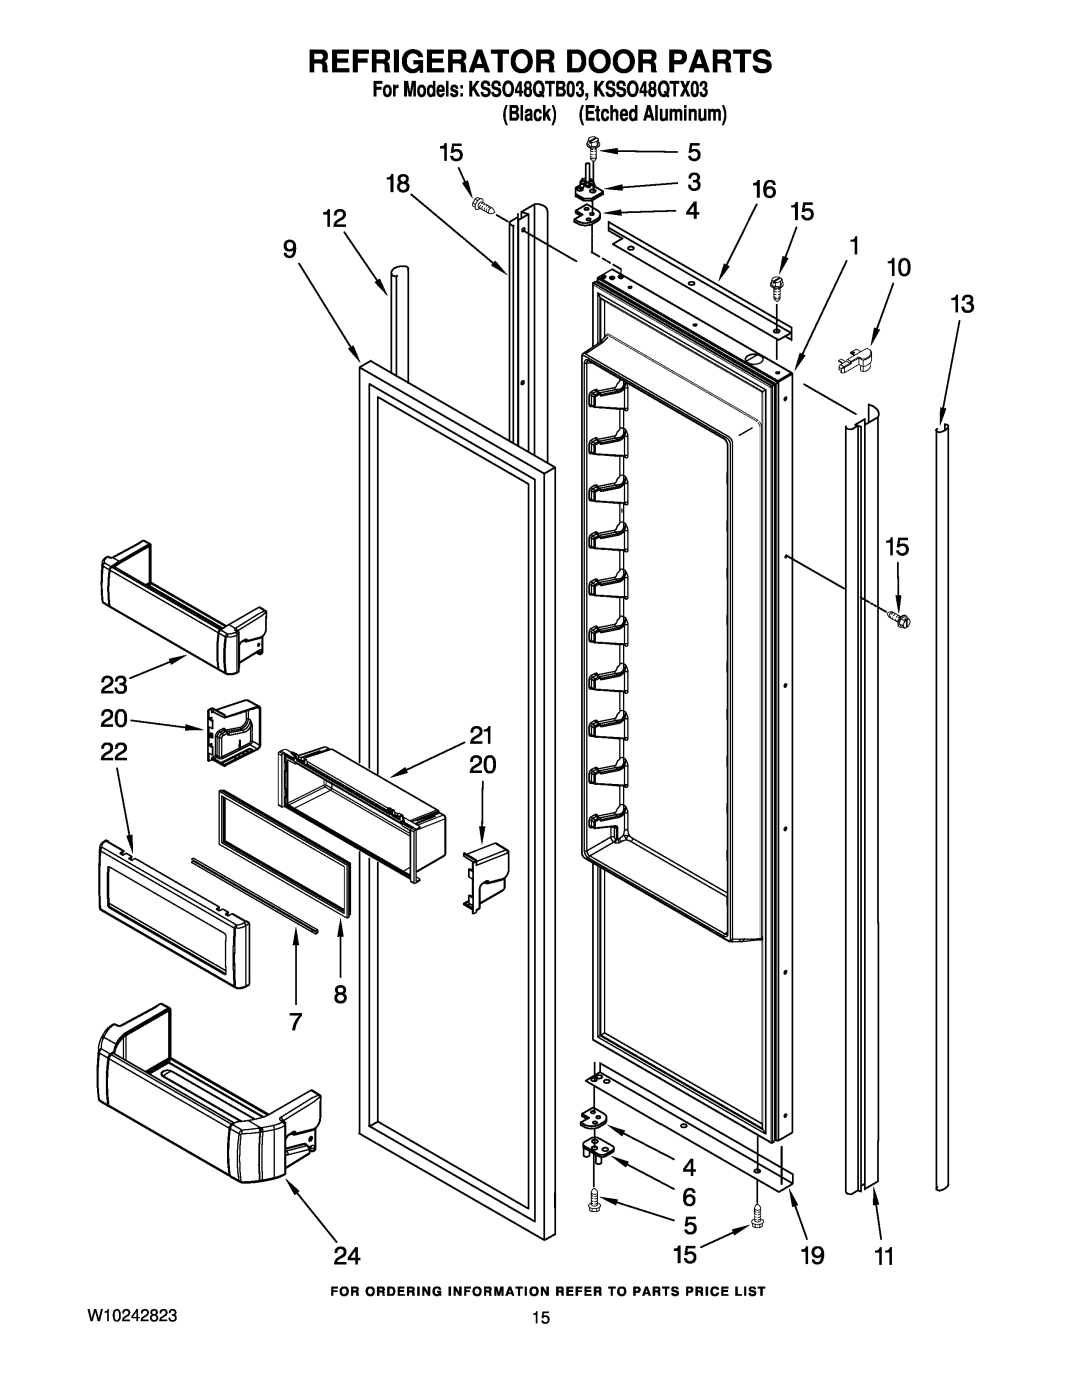 KitchenAid manual Refrigerator Door Parts, For Models KSSO48QTB03, KSSO48QTX03 Black Etched Aluminum 